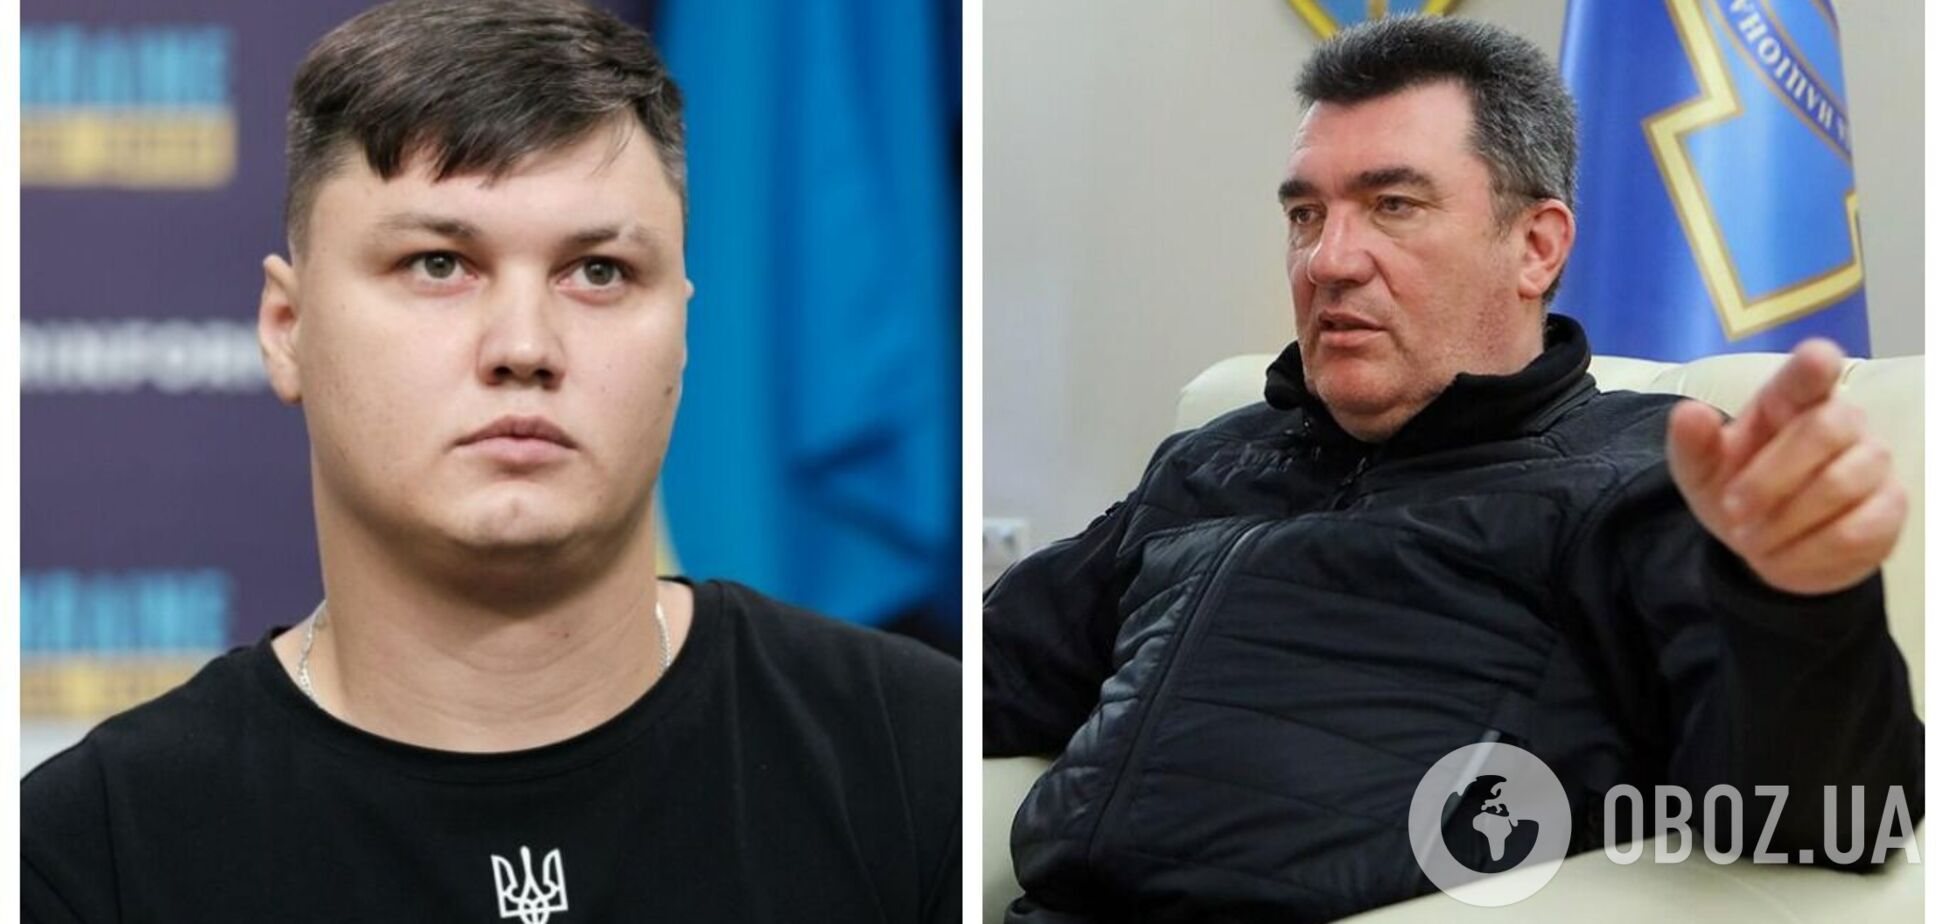 'Точно был бы здесь защищен': Данилов заявил, что российскому летчику Кузьминову предлагали остаться в Украине